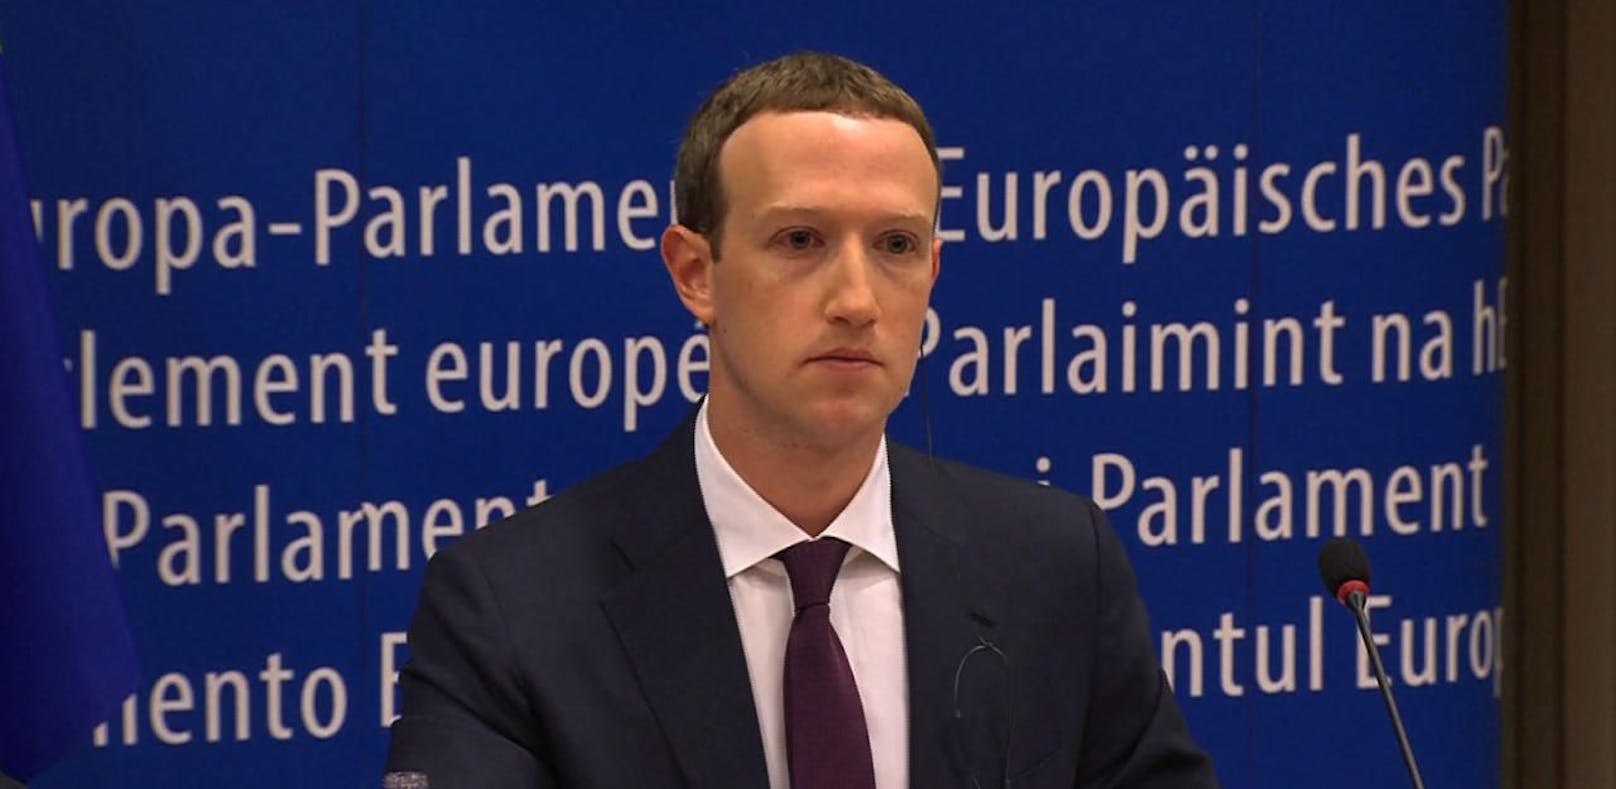 Facebook-Chef Mark Zuckerberg gab in einem Interview mit dem irischen Sender RTE bekannt, dass Facebook im Hinblick auf die Europawahlen ein Zentrum einrichten möchte, das sich der Echtheitsüberprüfung von Postings widmet.